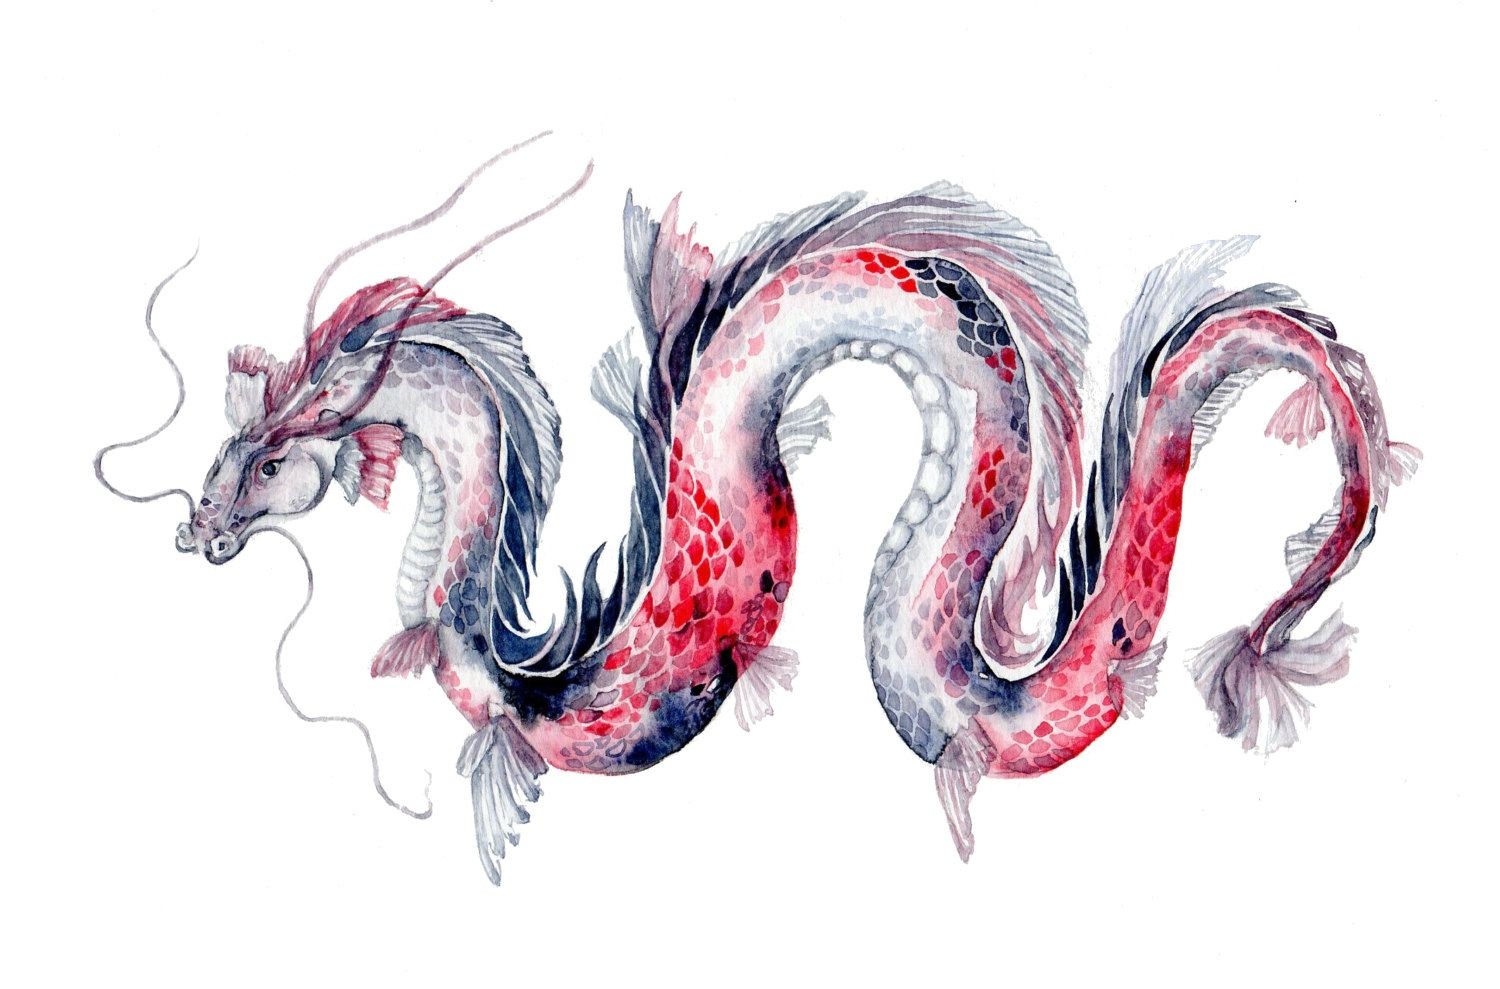 Рисунки китайских драконов цветные